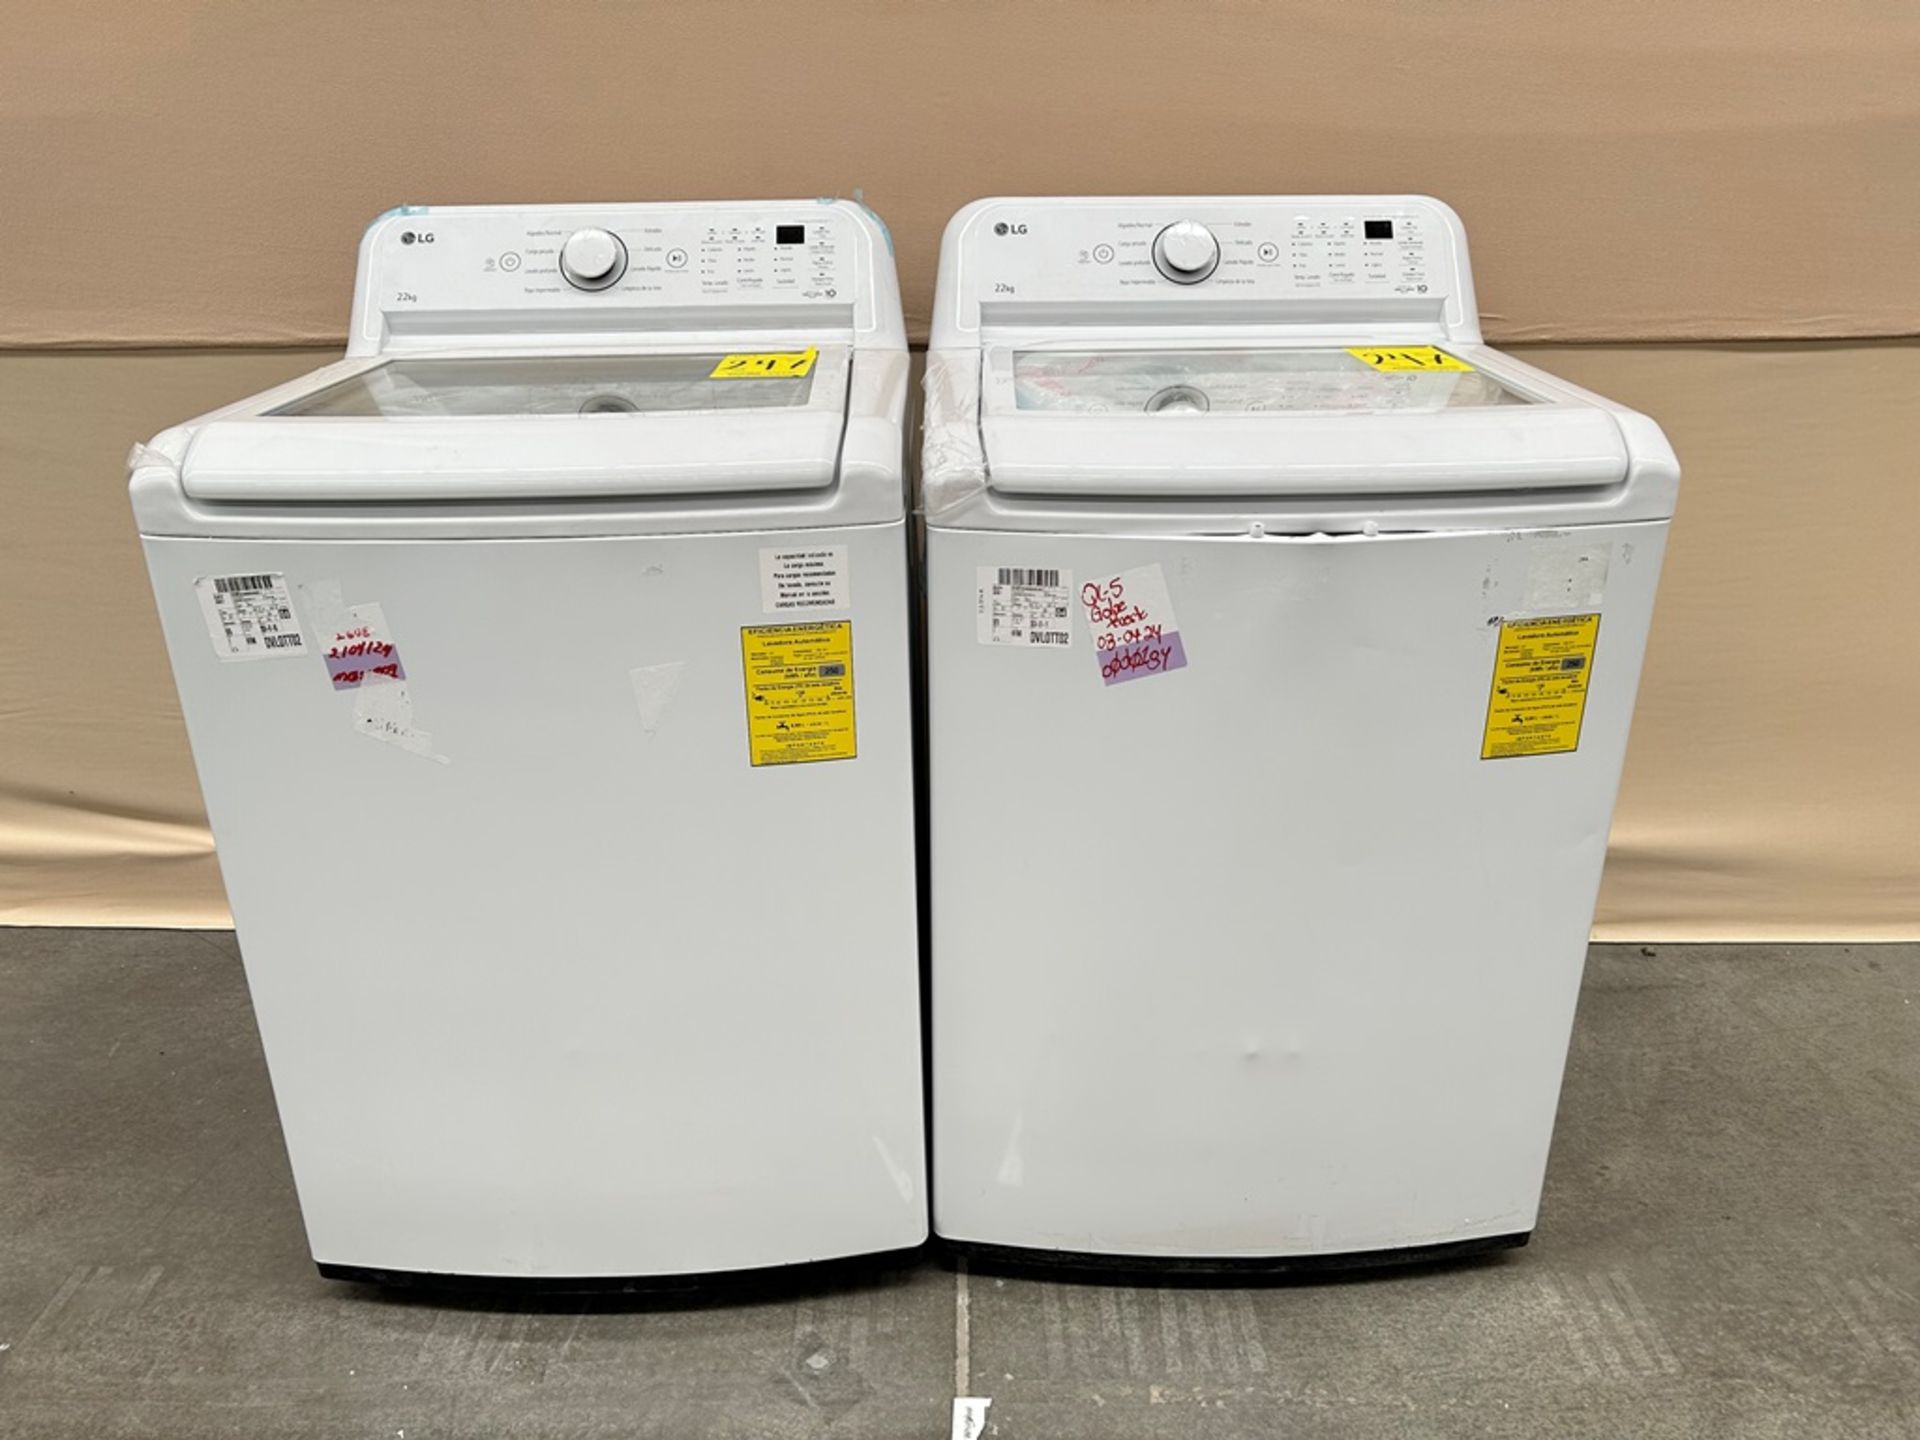 Lote de 2 lavadoras contiene: 1 Lavadora de 22 KG Marca LG, Modelo WT22WT6HK, Serie 37591, Color BL